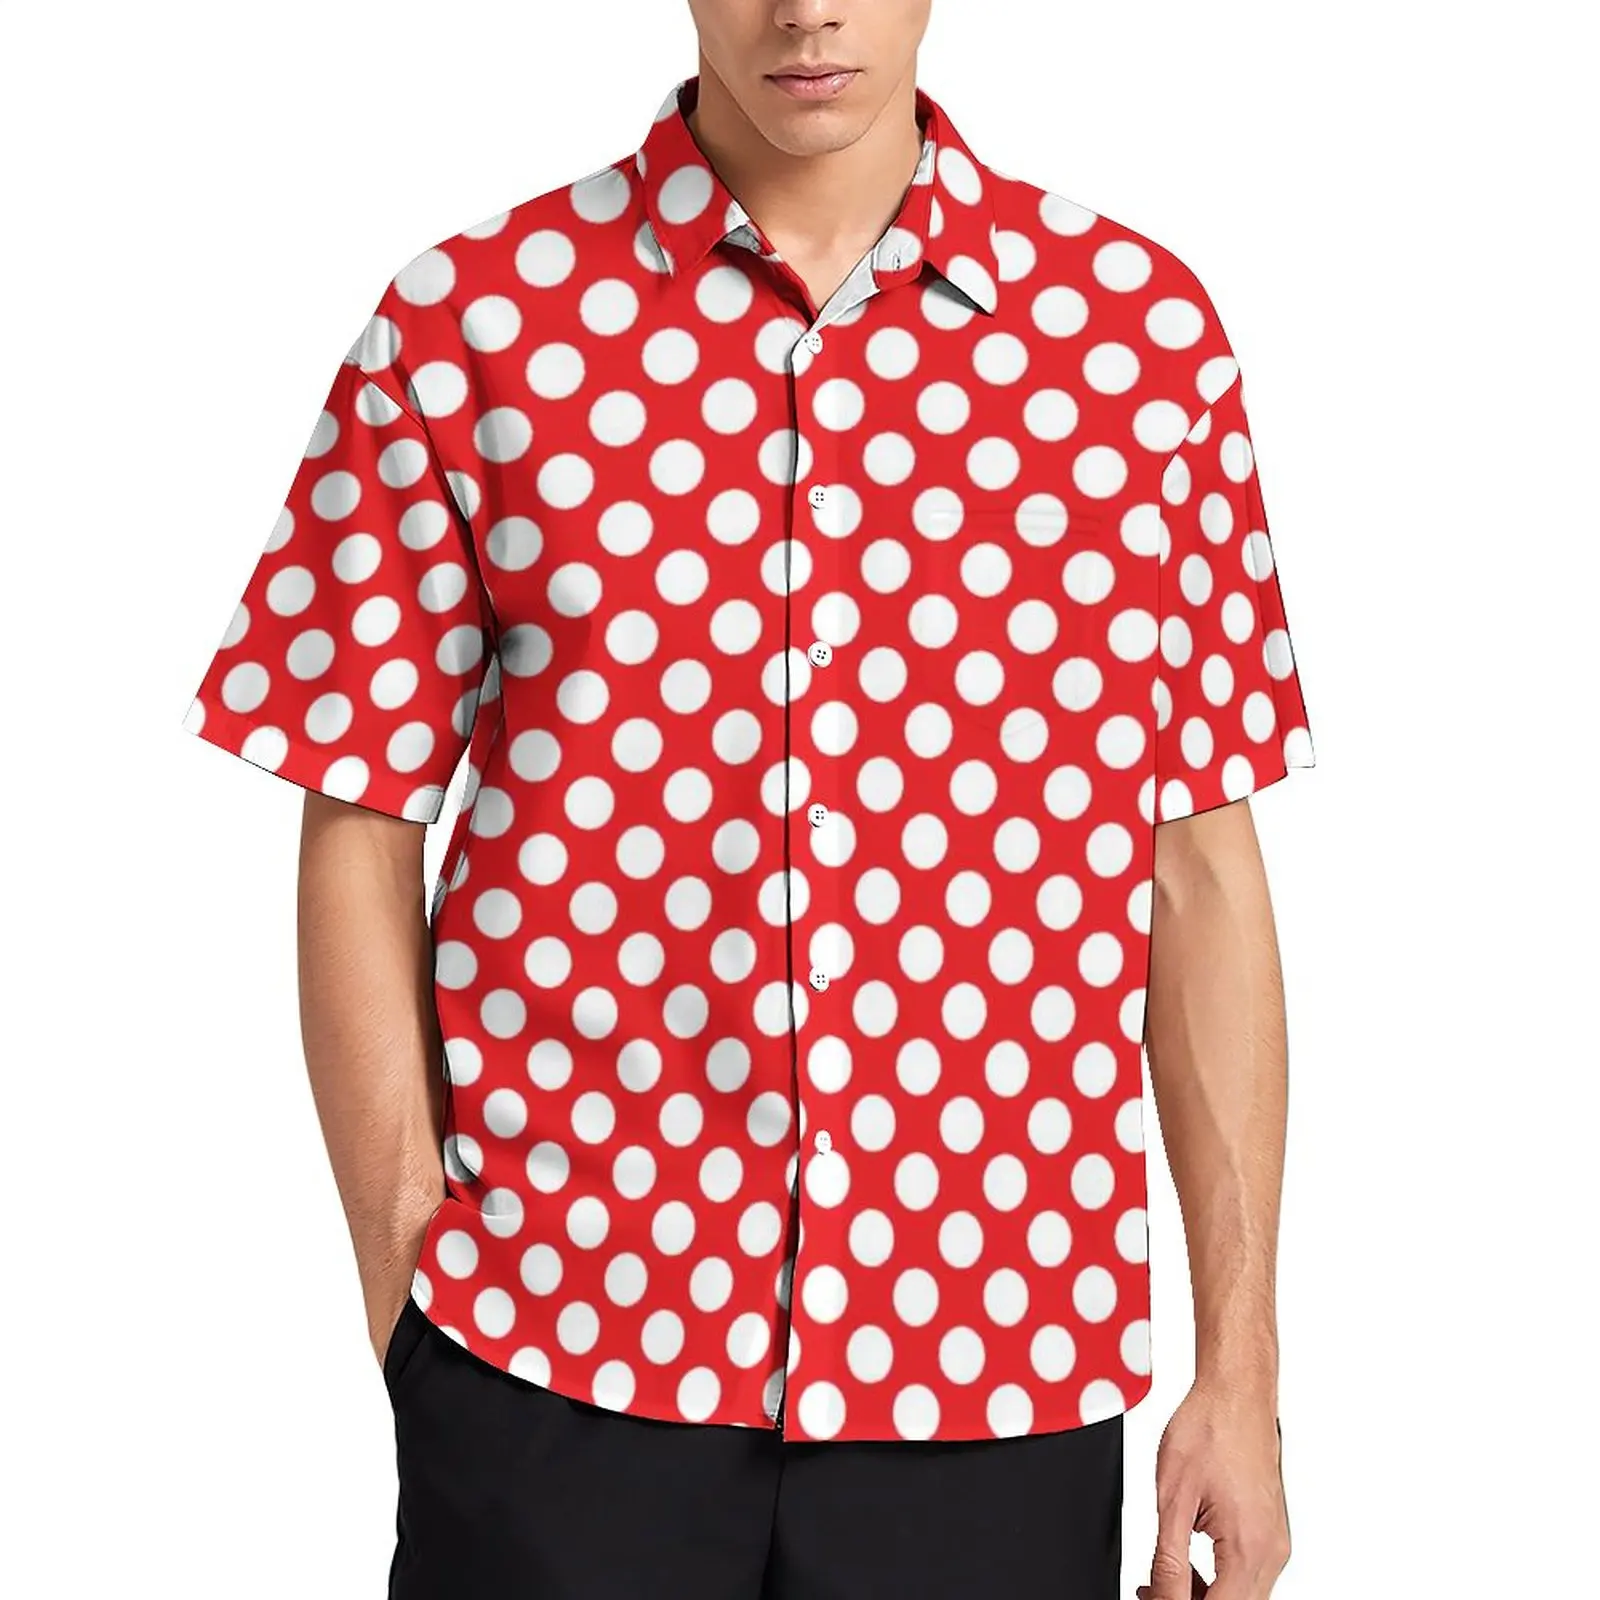 

Рубашка мужская повседневная в горошек, винтажная пляжная блузка в красно-белый горошек, стильная рубашка в стиле 80-х, большие размеры, на лето